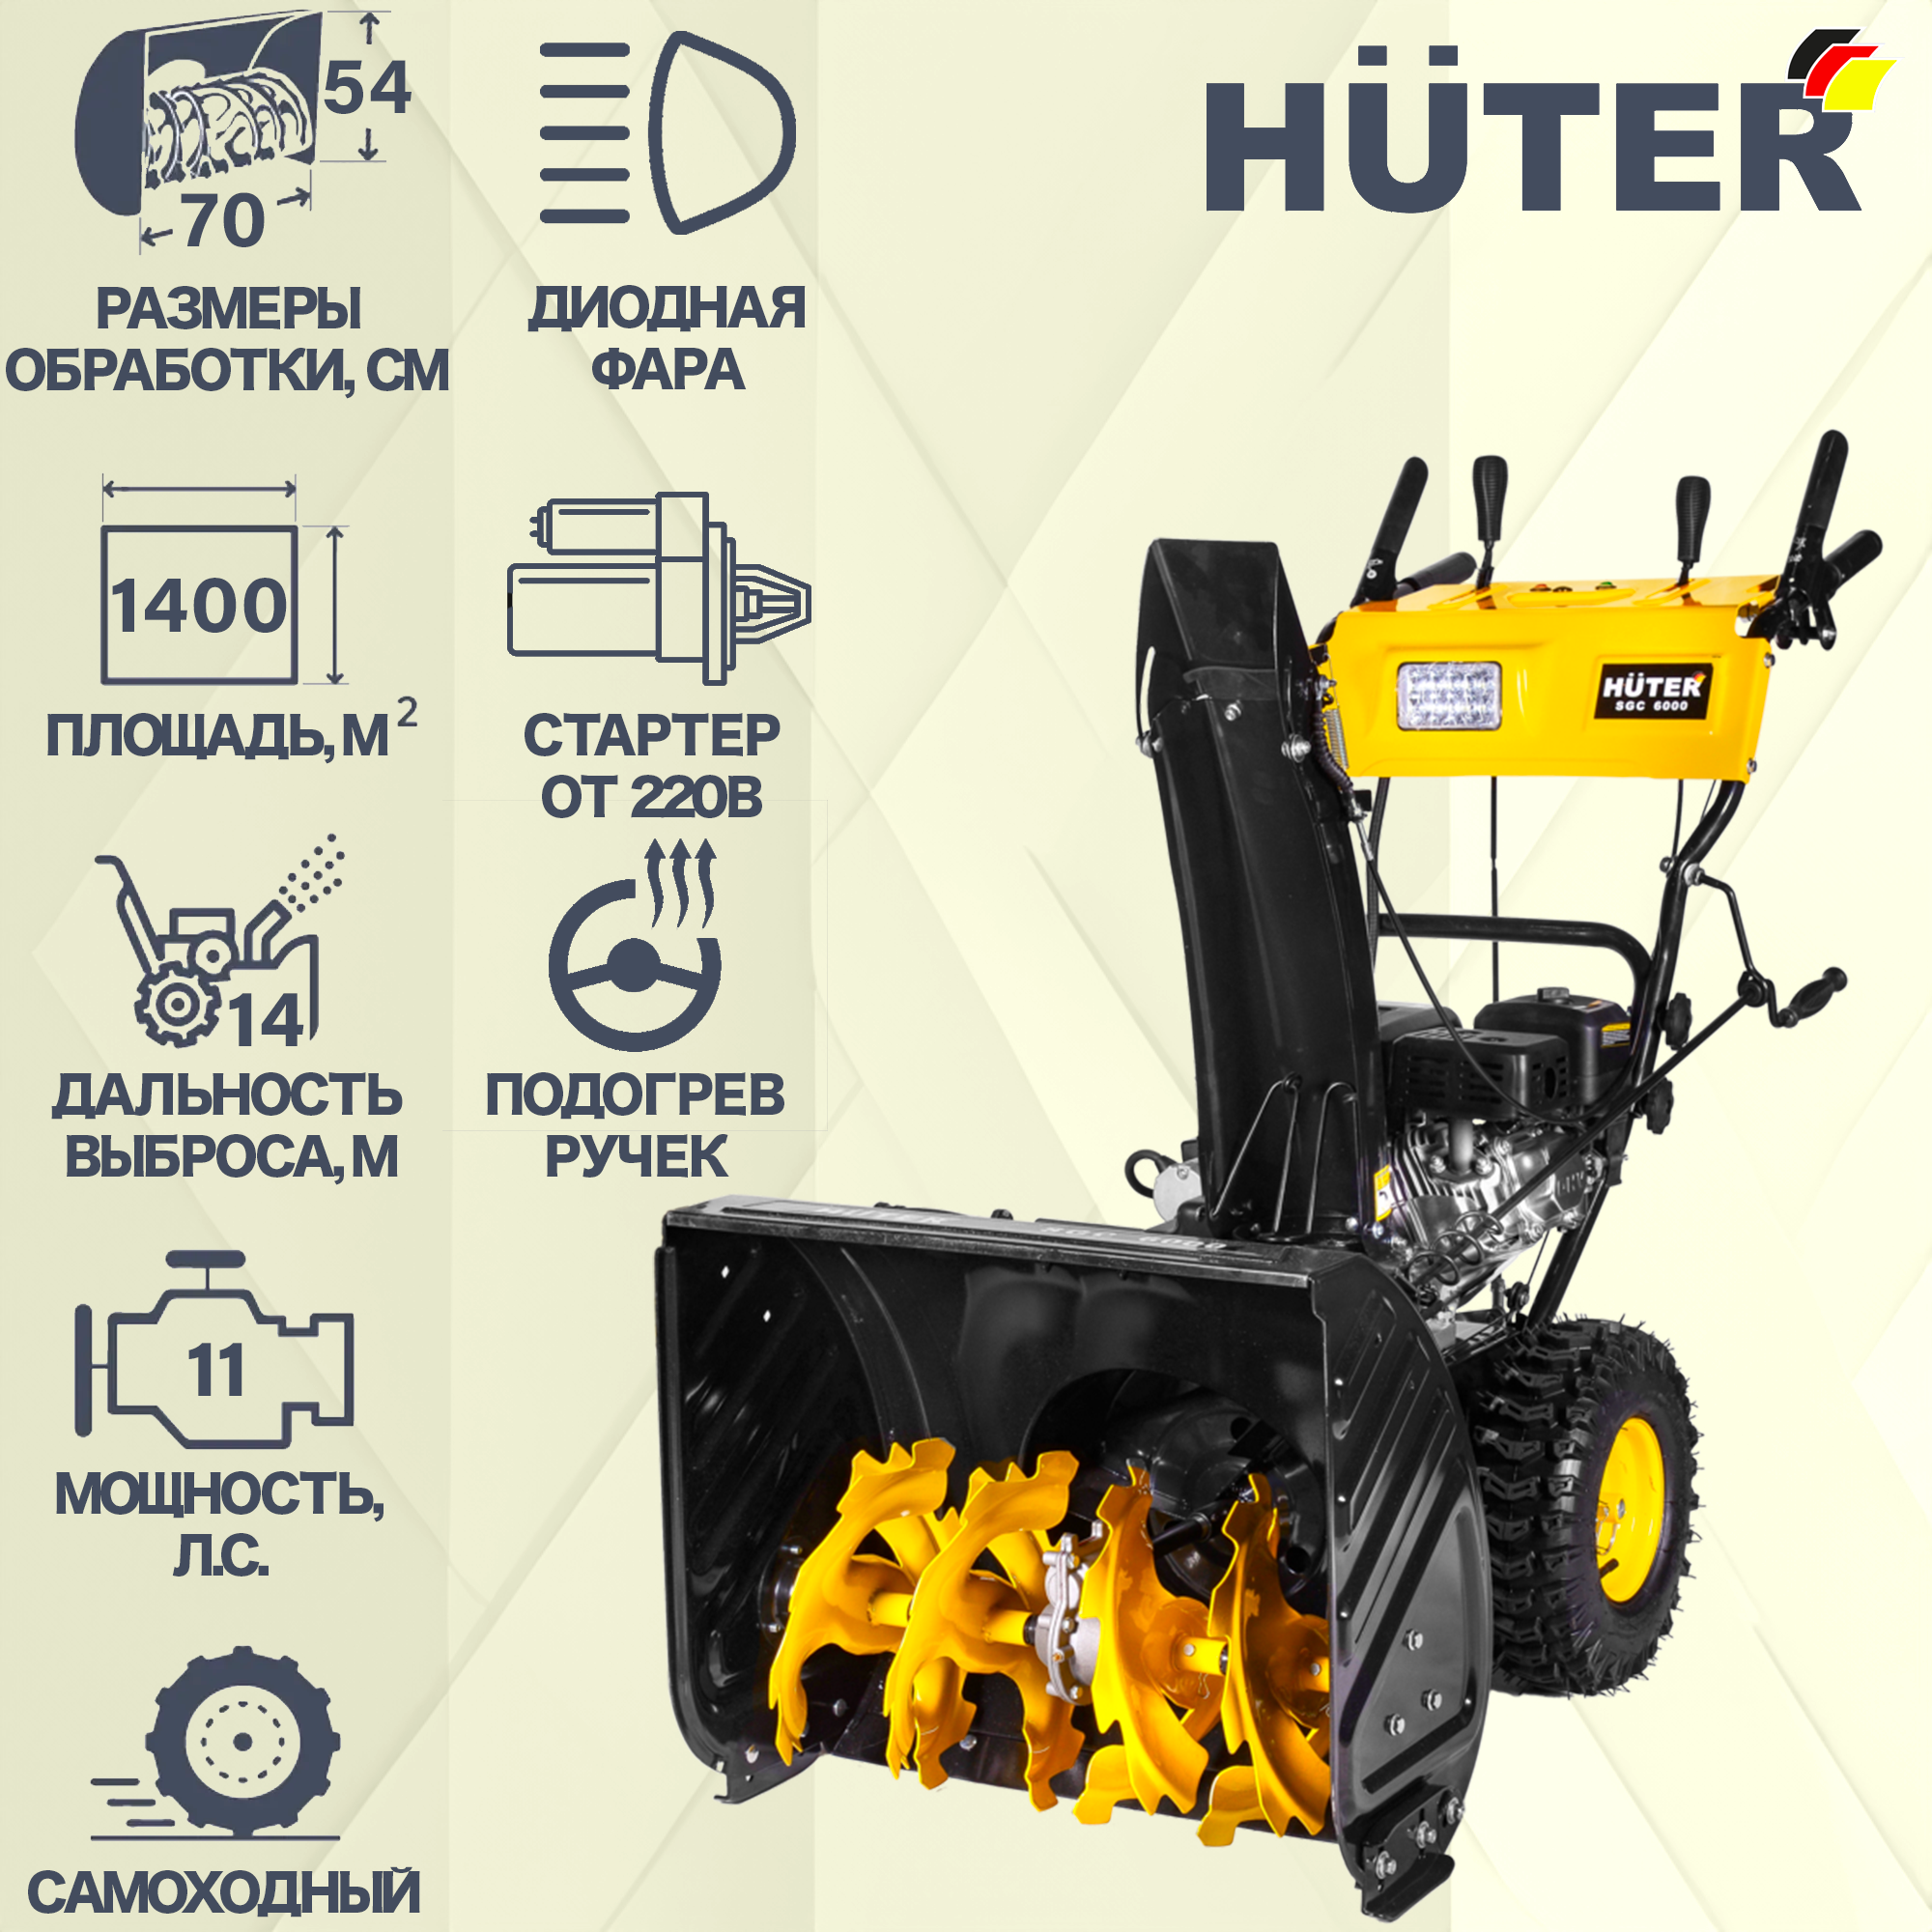  бензиновый Huter SGC 6000 62 см 8 л.с. по цене 73490 ₽/шт .